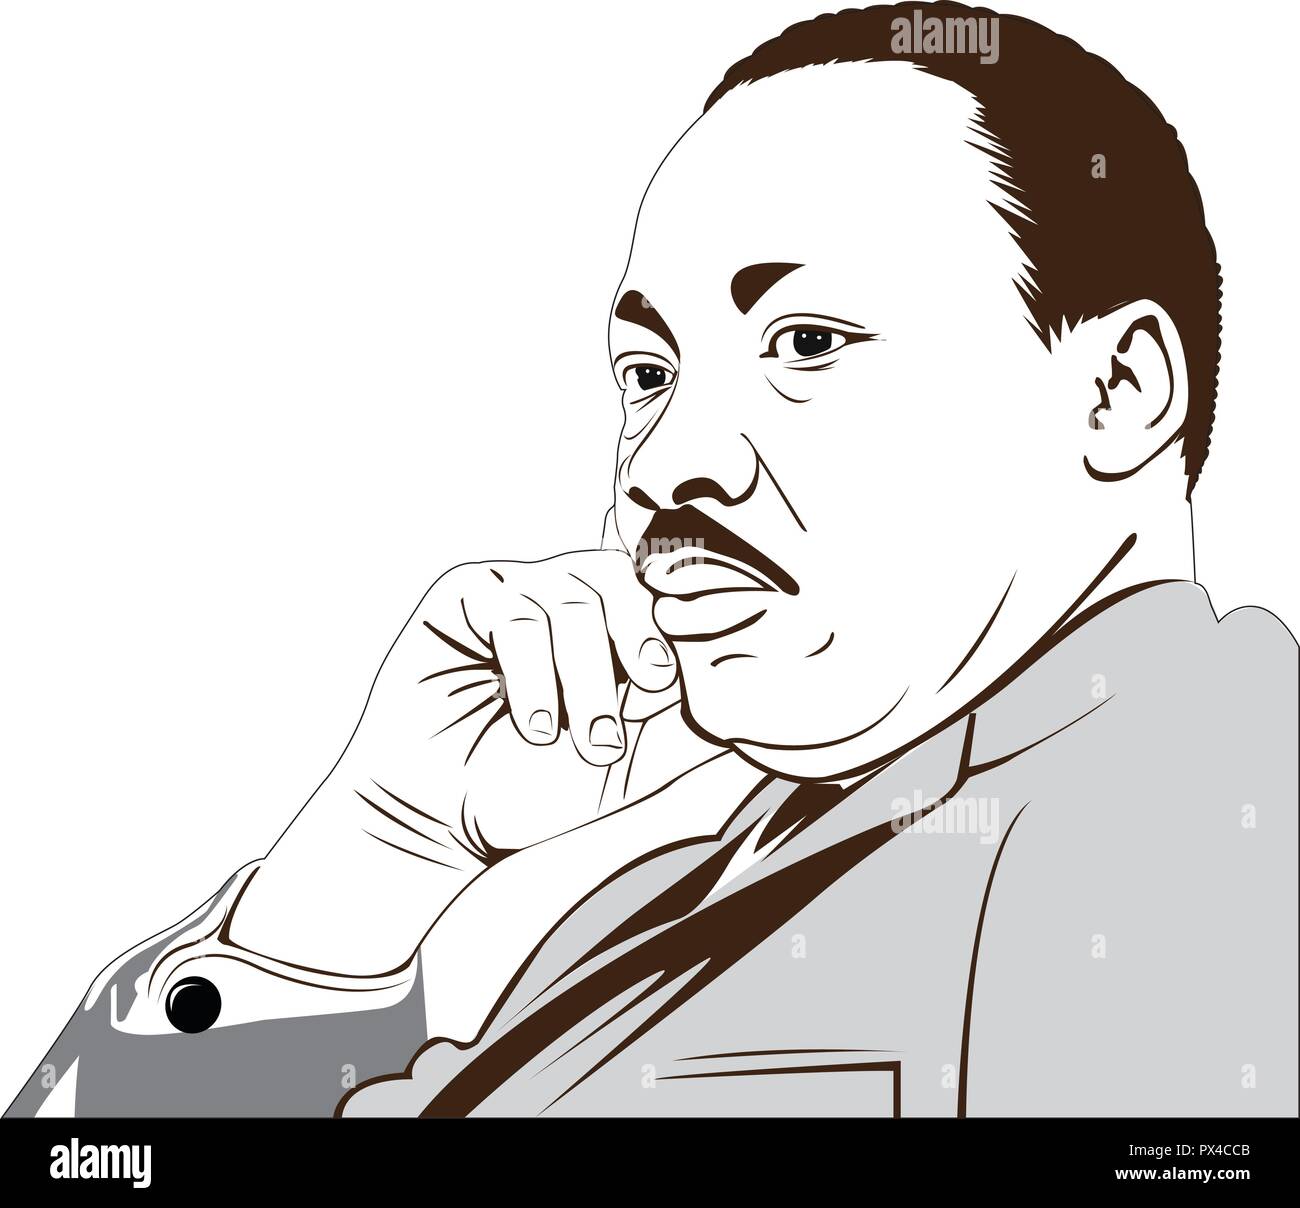 Martin Luther King Jr. (1929 - 1968) un americano. dove ha pronunciato il suo famoso "Ho un sogno" discorso. immagine vettoriale di Martin Luther King. Illustrazione Vettoriale